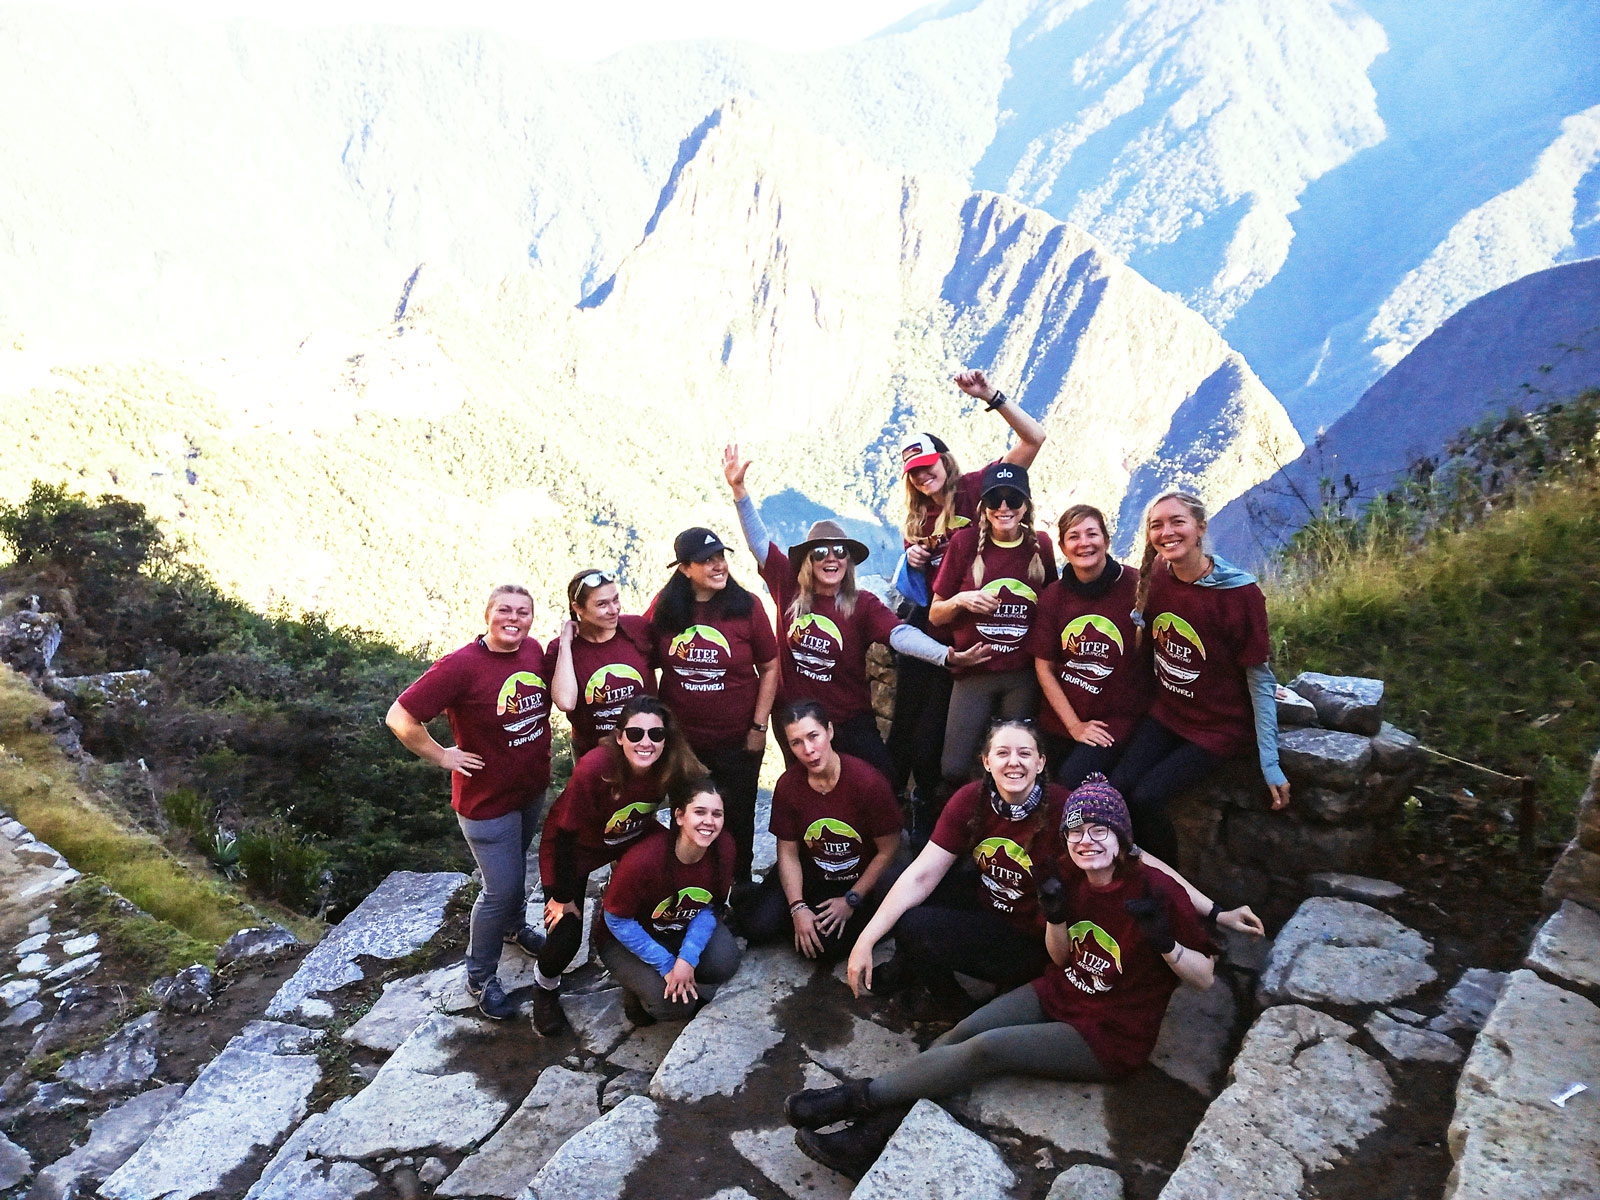 Day 4: Trekking “Wiñayhuayna – Inti Punku & Machupicchu guided Tour”